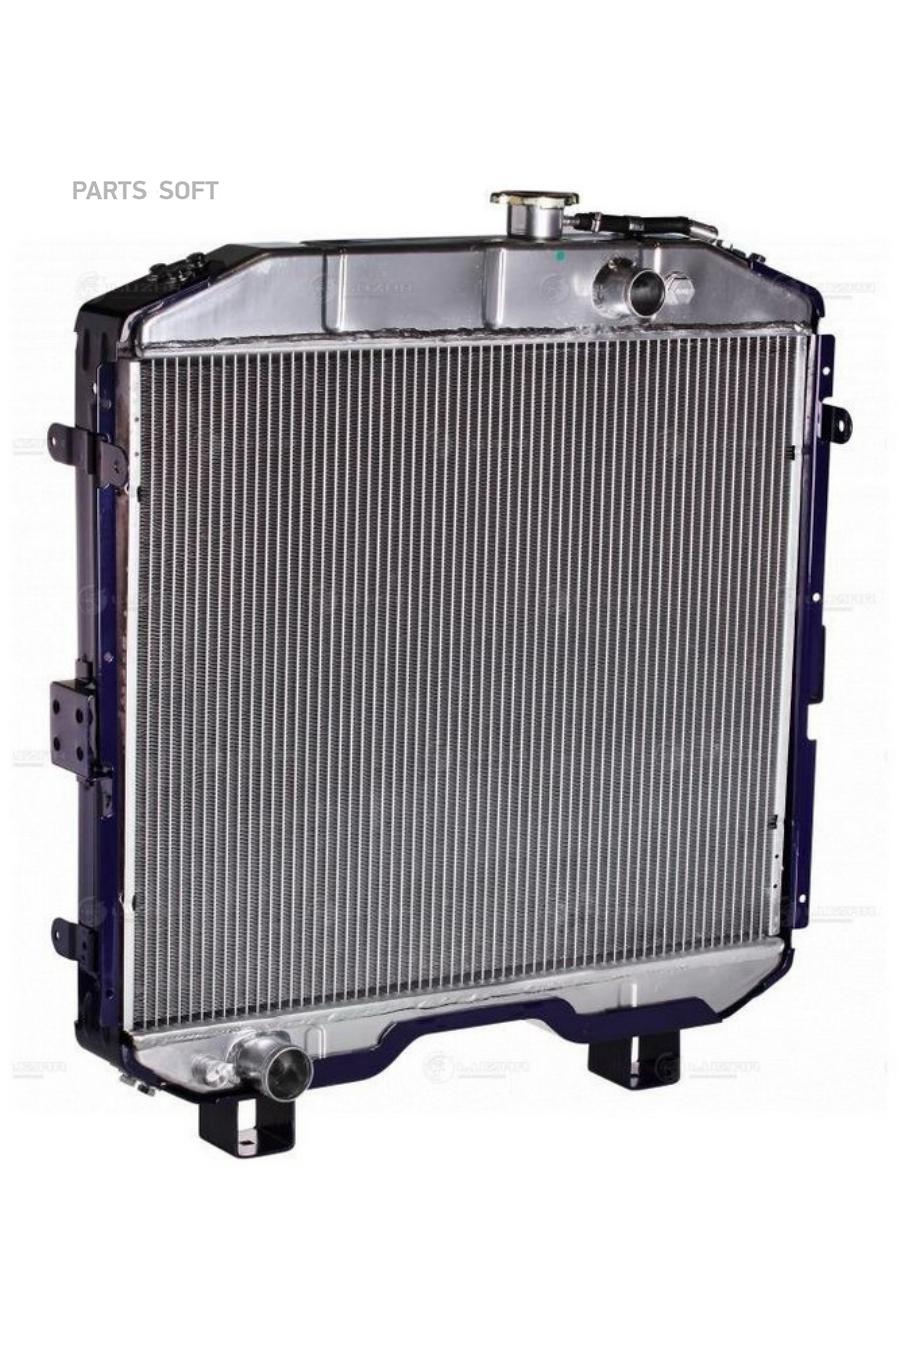 Радиатор паз 3205. Радиатор охлаждения ПАЗ 3205-1301010. Радиатор ПАЗ 32053 4 рядный. Радиатор охлаждения ПАЗ 3205. Радиатор ПАЗ 3204.